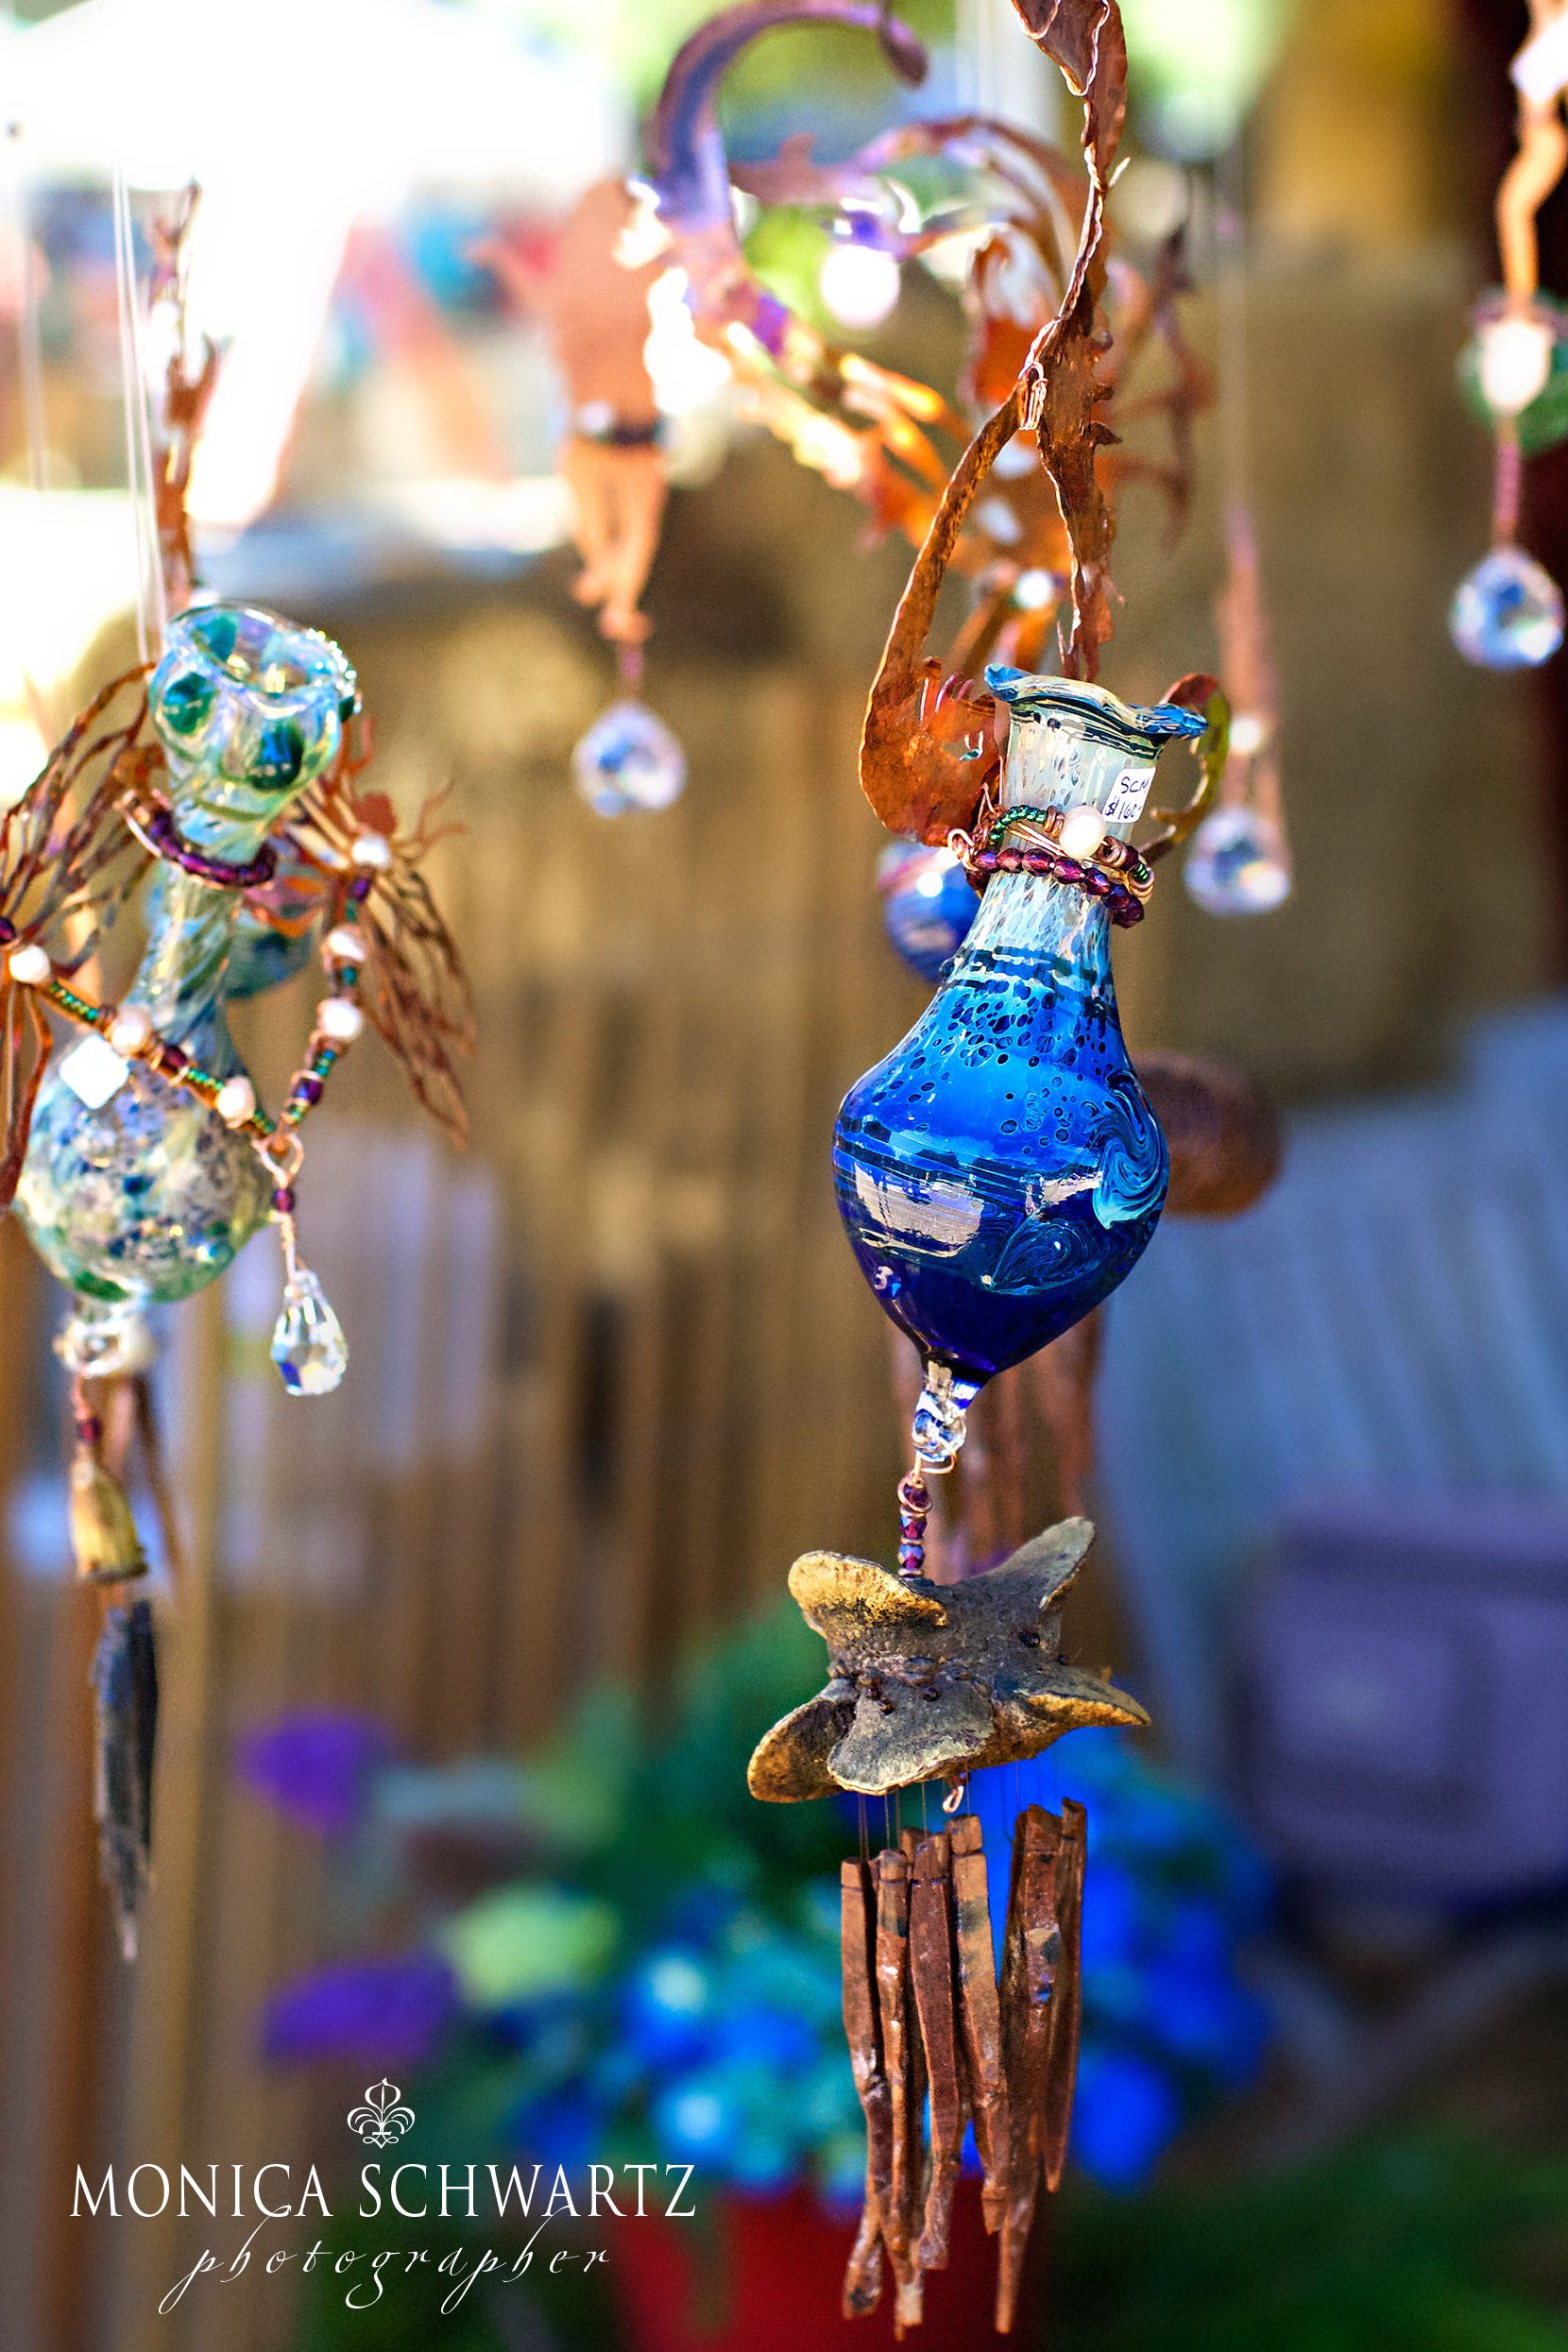 An-indigo-blue-ornament-at-a-country-fair